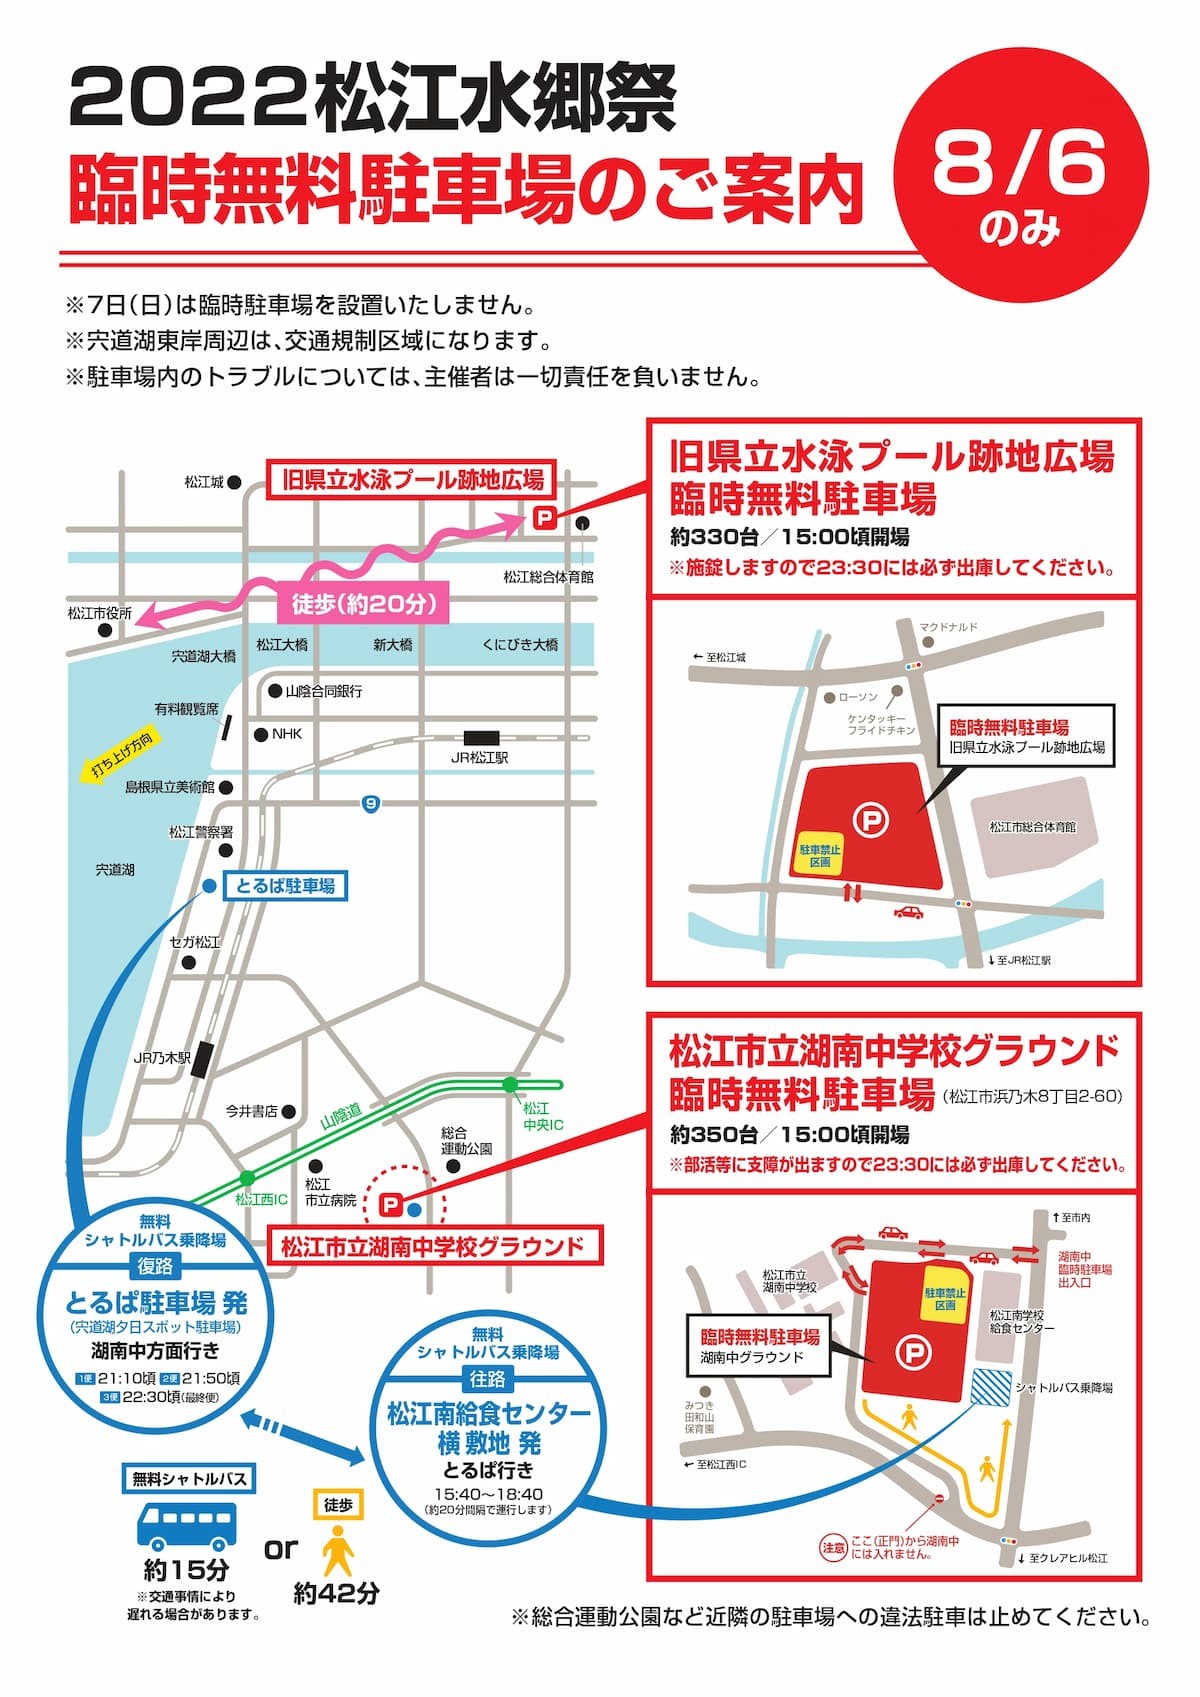 松江市の花火大会「2022松江水郷祭 湖上花火大会」での2022年開催時の臨時駐車場マップ